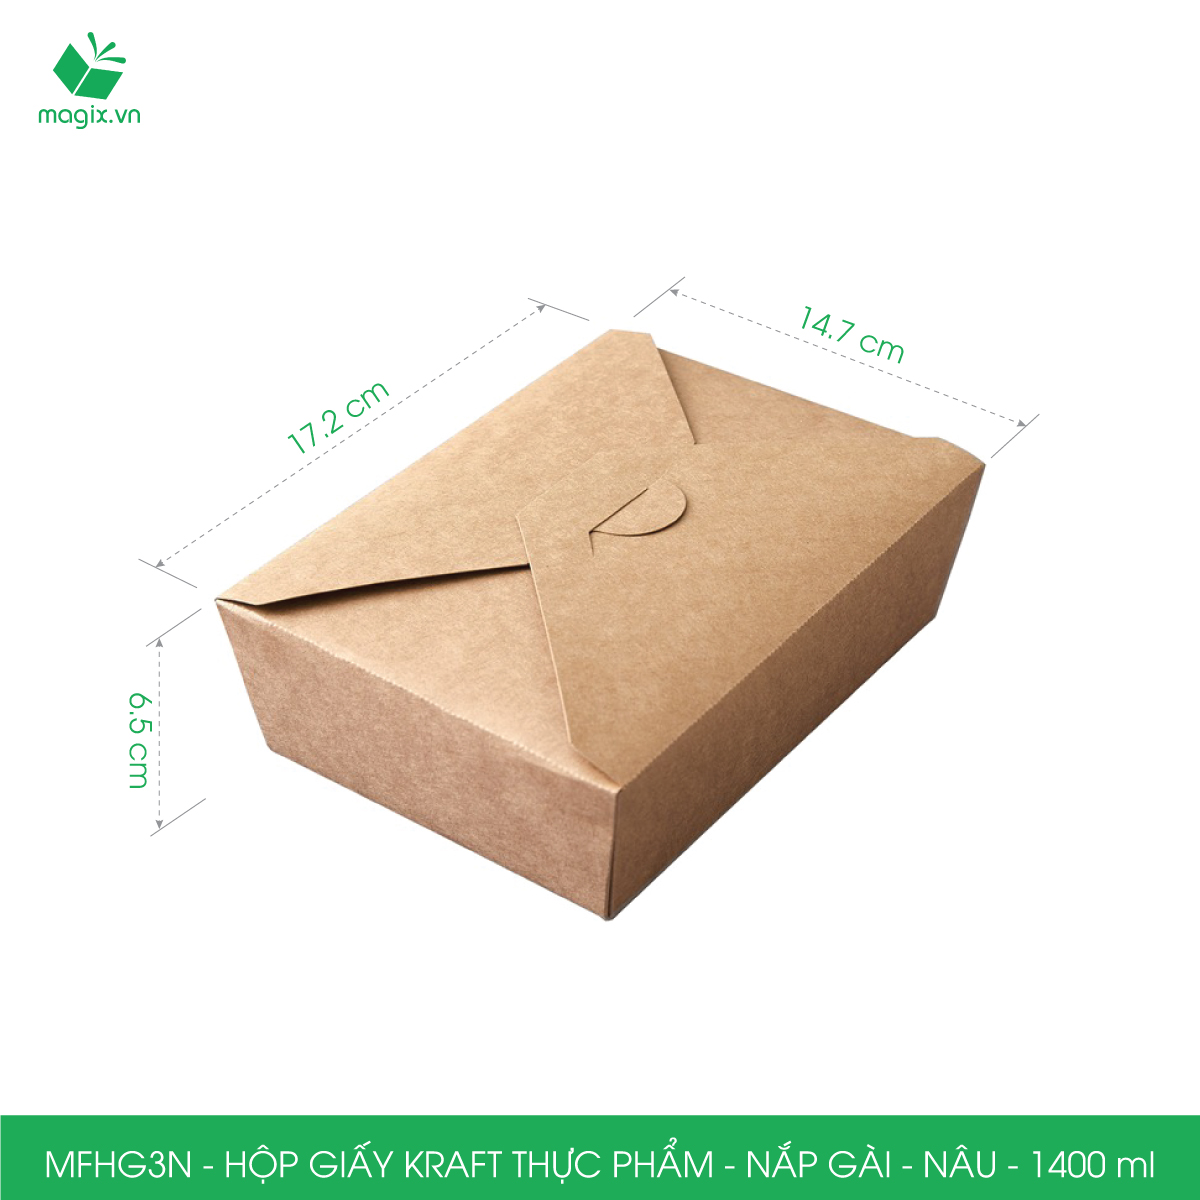 MFHG3N - 25 hộp giấy kraft thực phẩm 1400ml, hộp giấy nắp gập màu nâu đựng thức ăn, hộp giấy nắp gài gói đồ ăn mang đi 